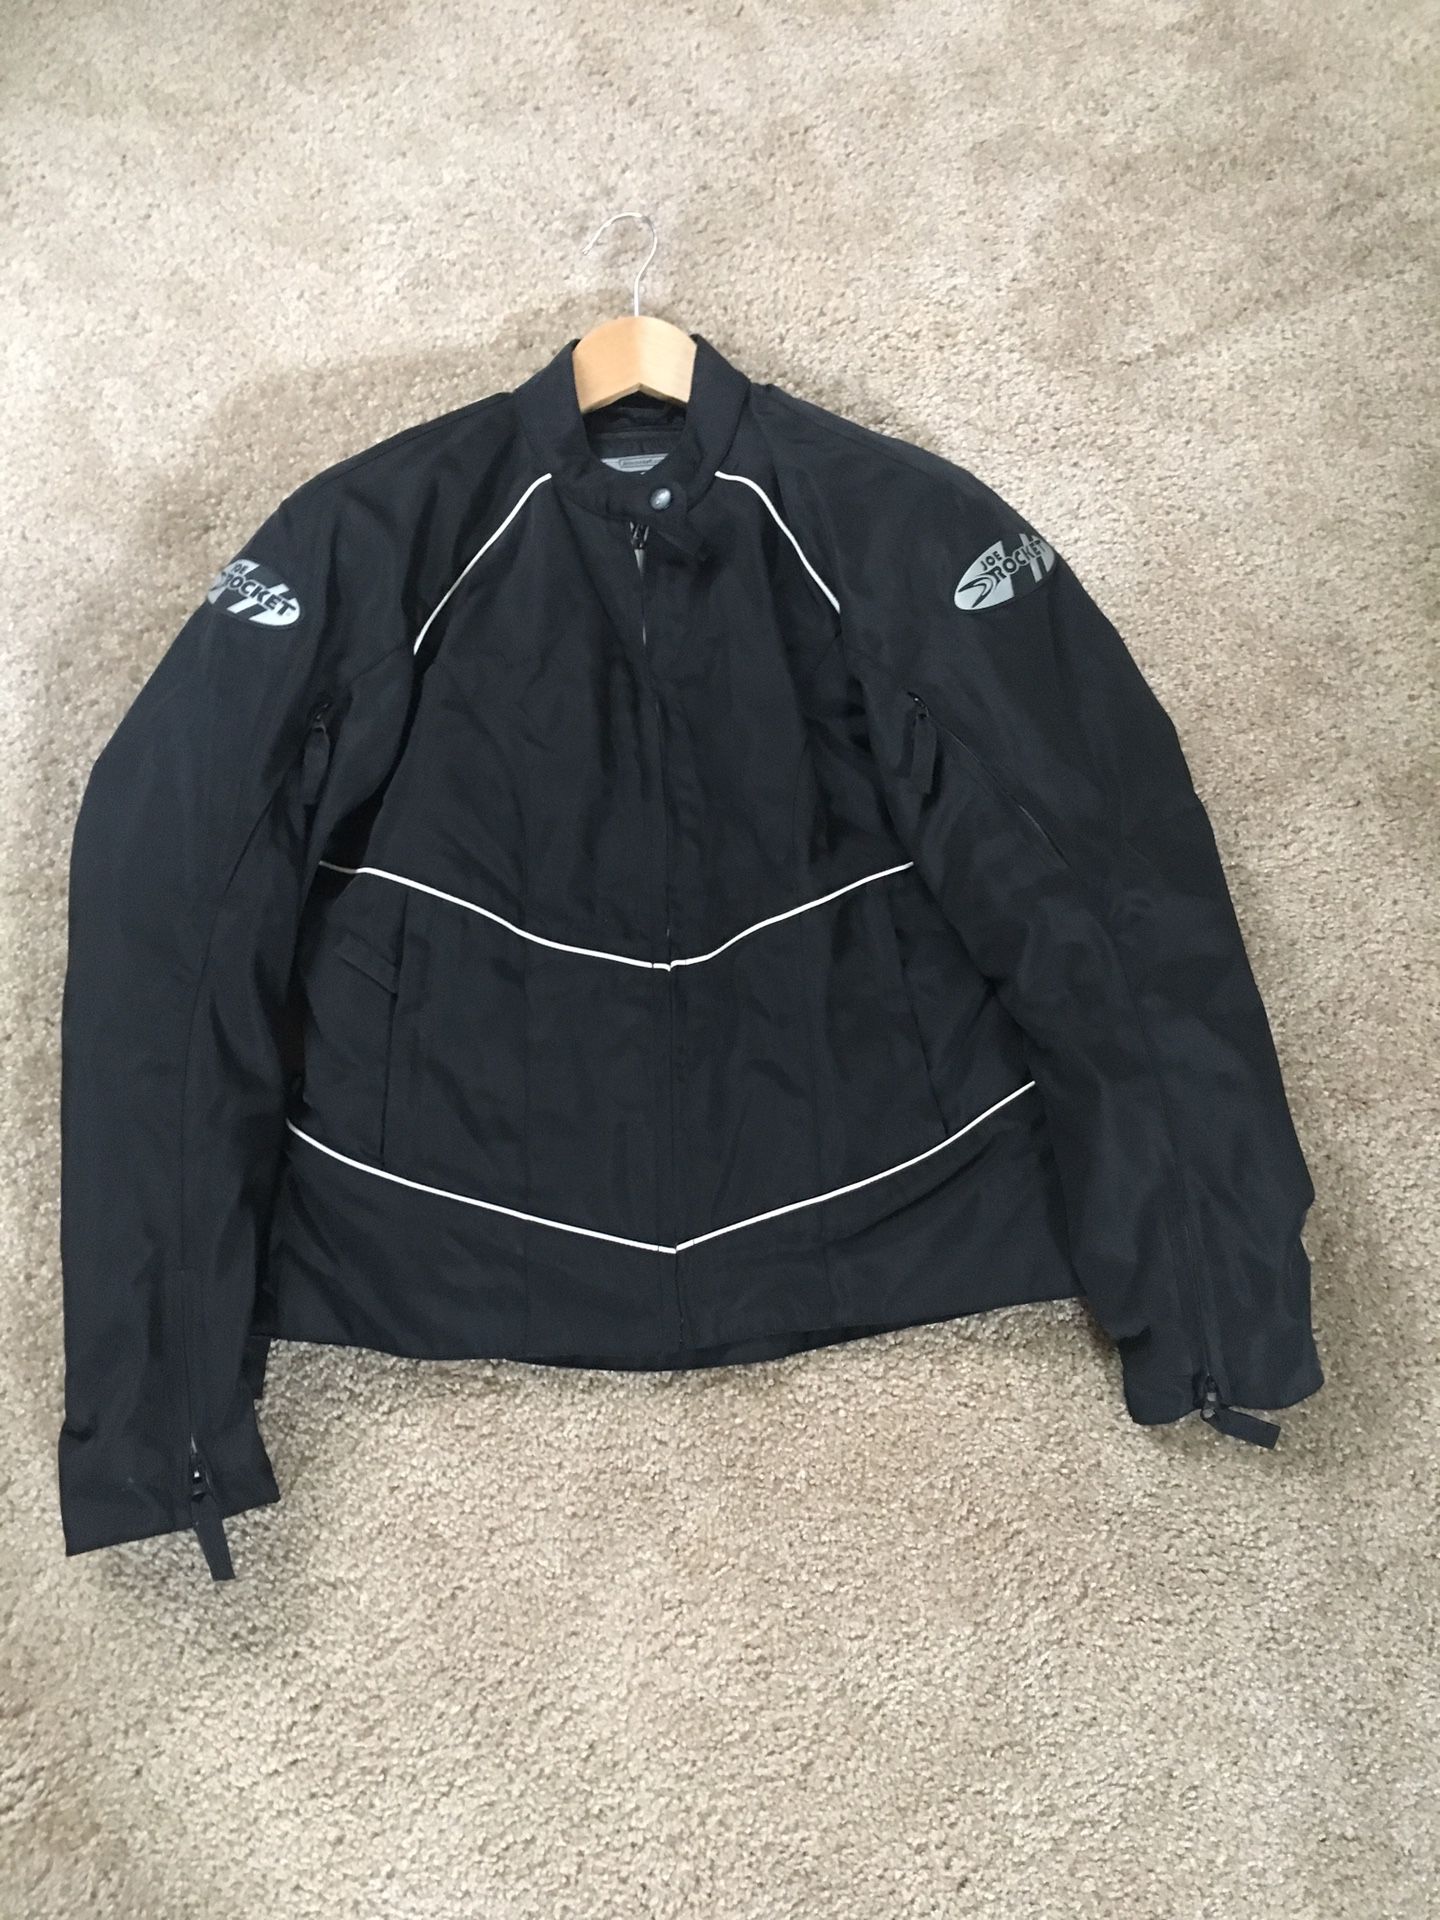 Women’s Joe Rocket motorcycle jacket size L